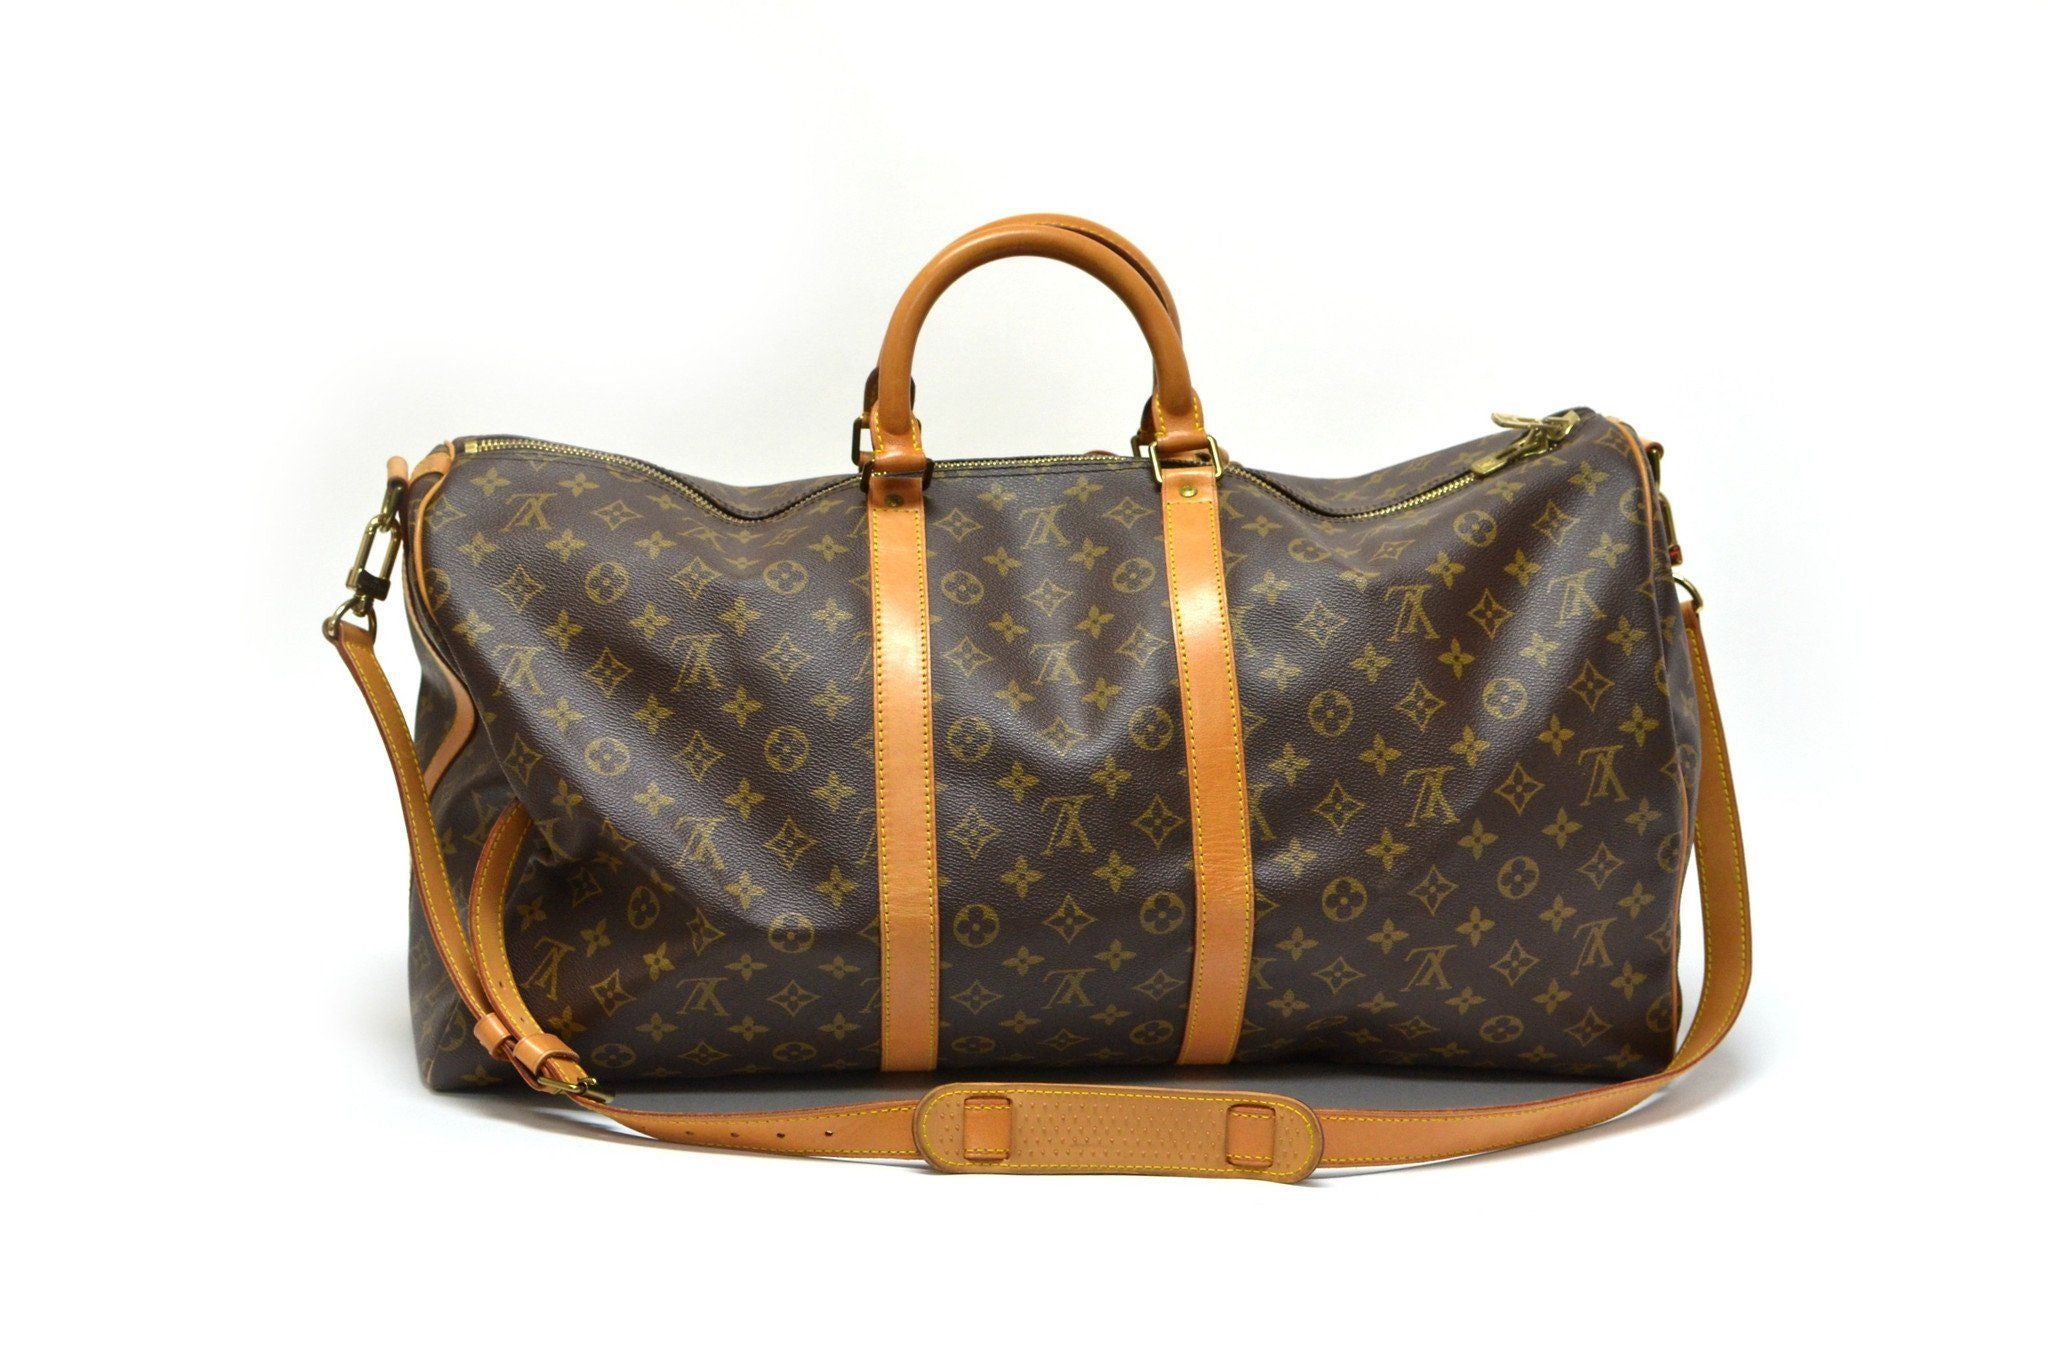 Authentic Vintage Louis Vuitton 55cm Keepall Bag – The Vintage Contessa